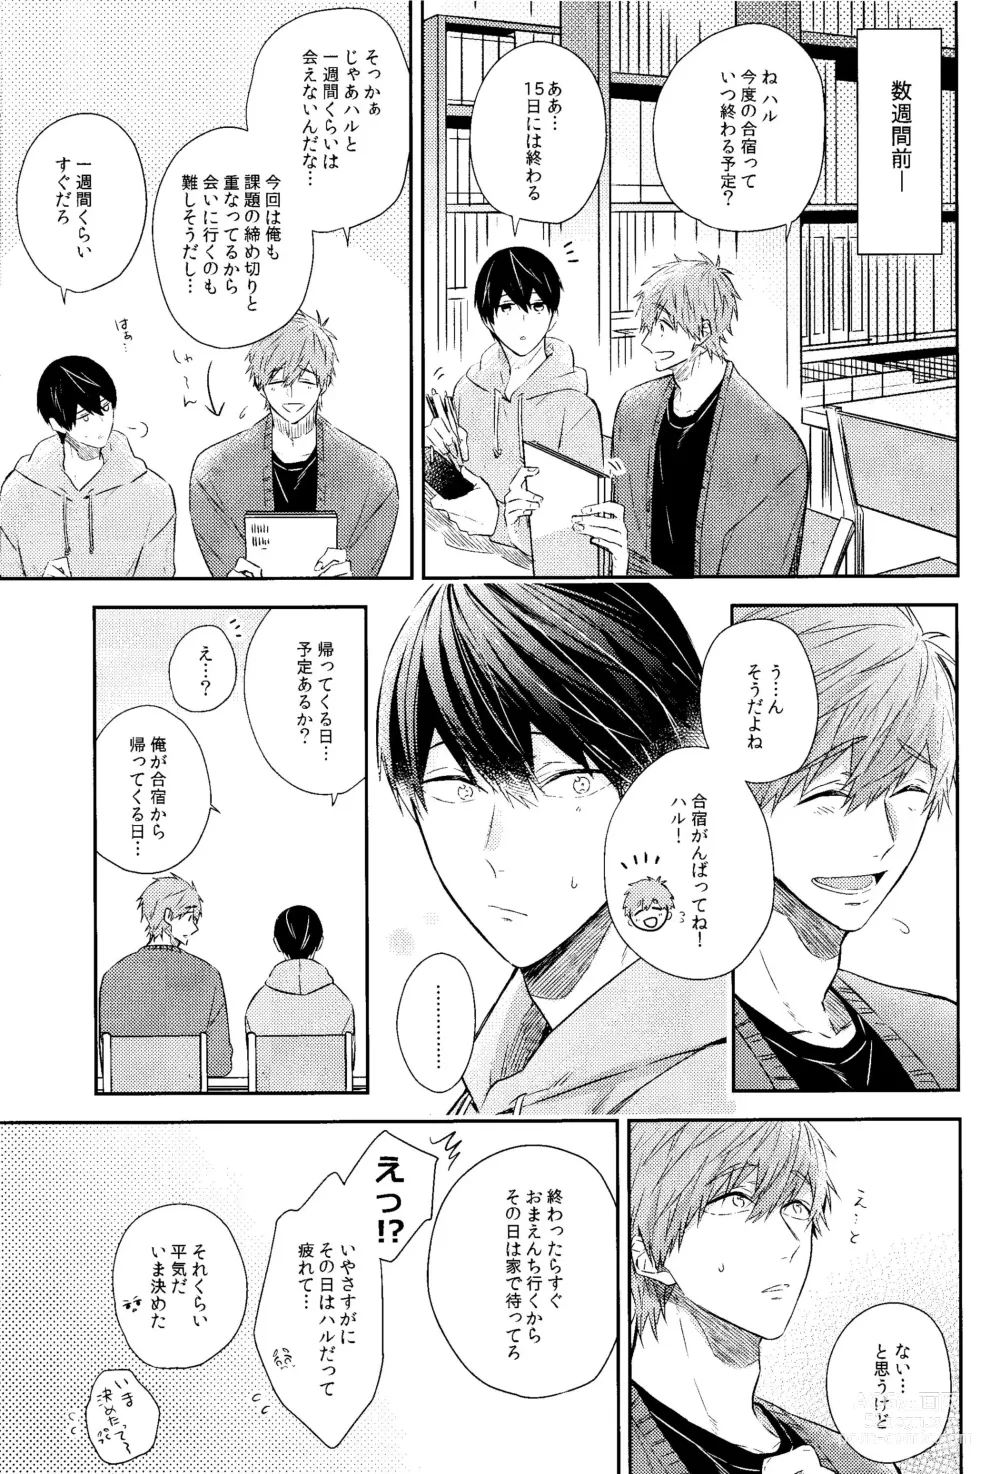 Page 4 of doujinshi Kare Knit to Makoto to Haruka.